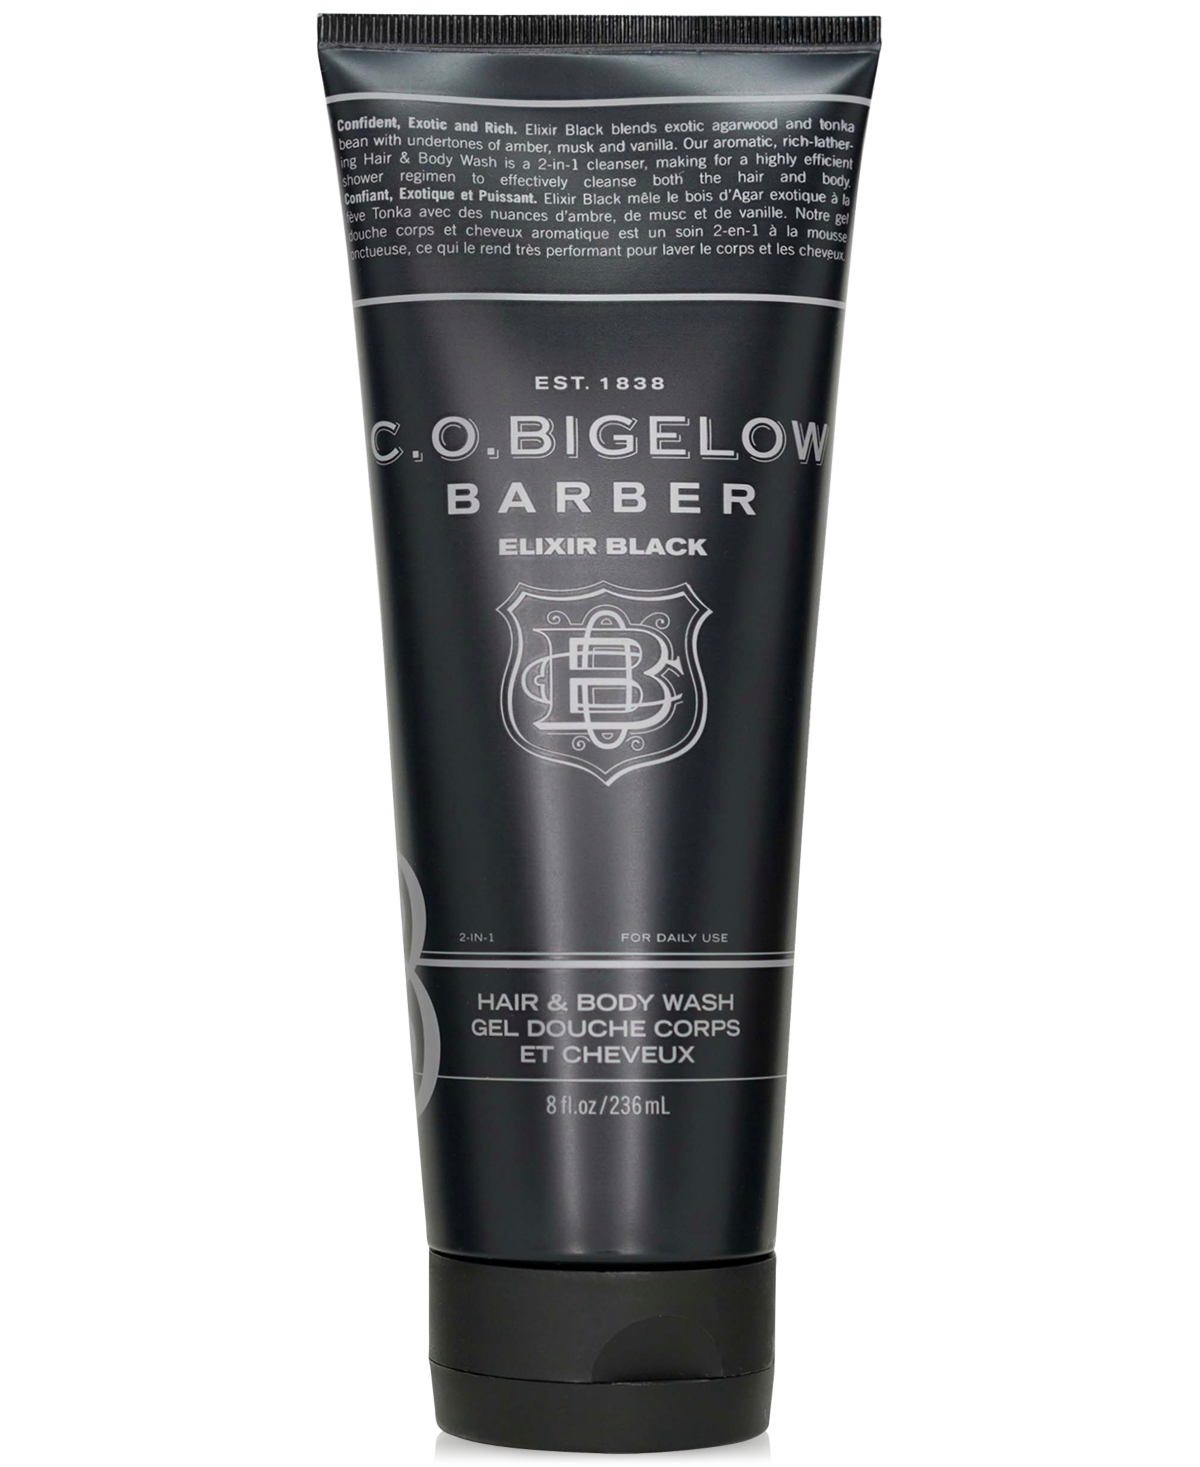 C.o. Bigelow Elixir Black Hair & Body Wash, 8 oz.